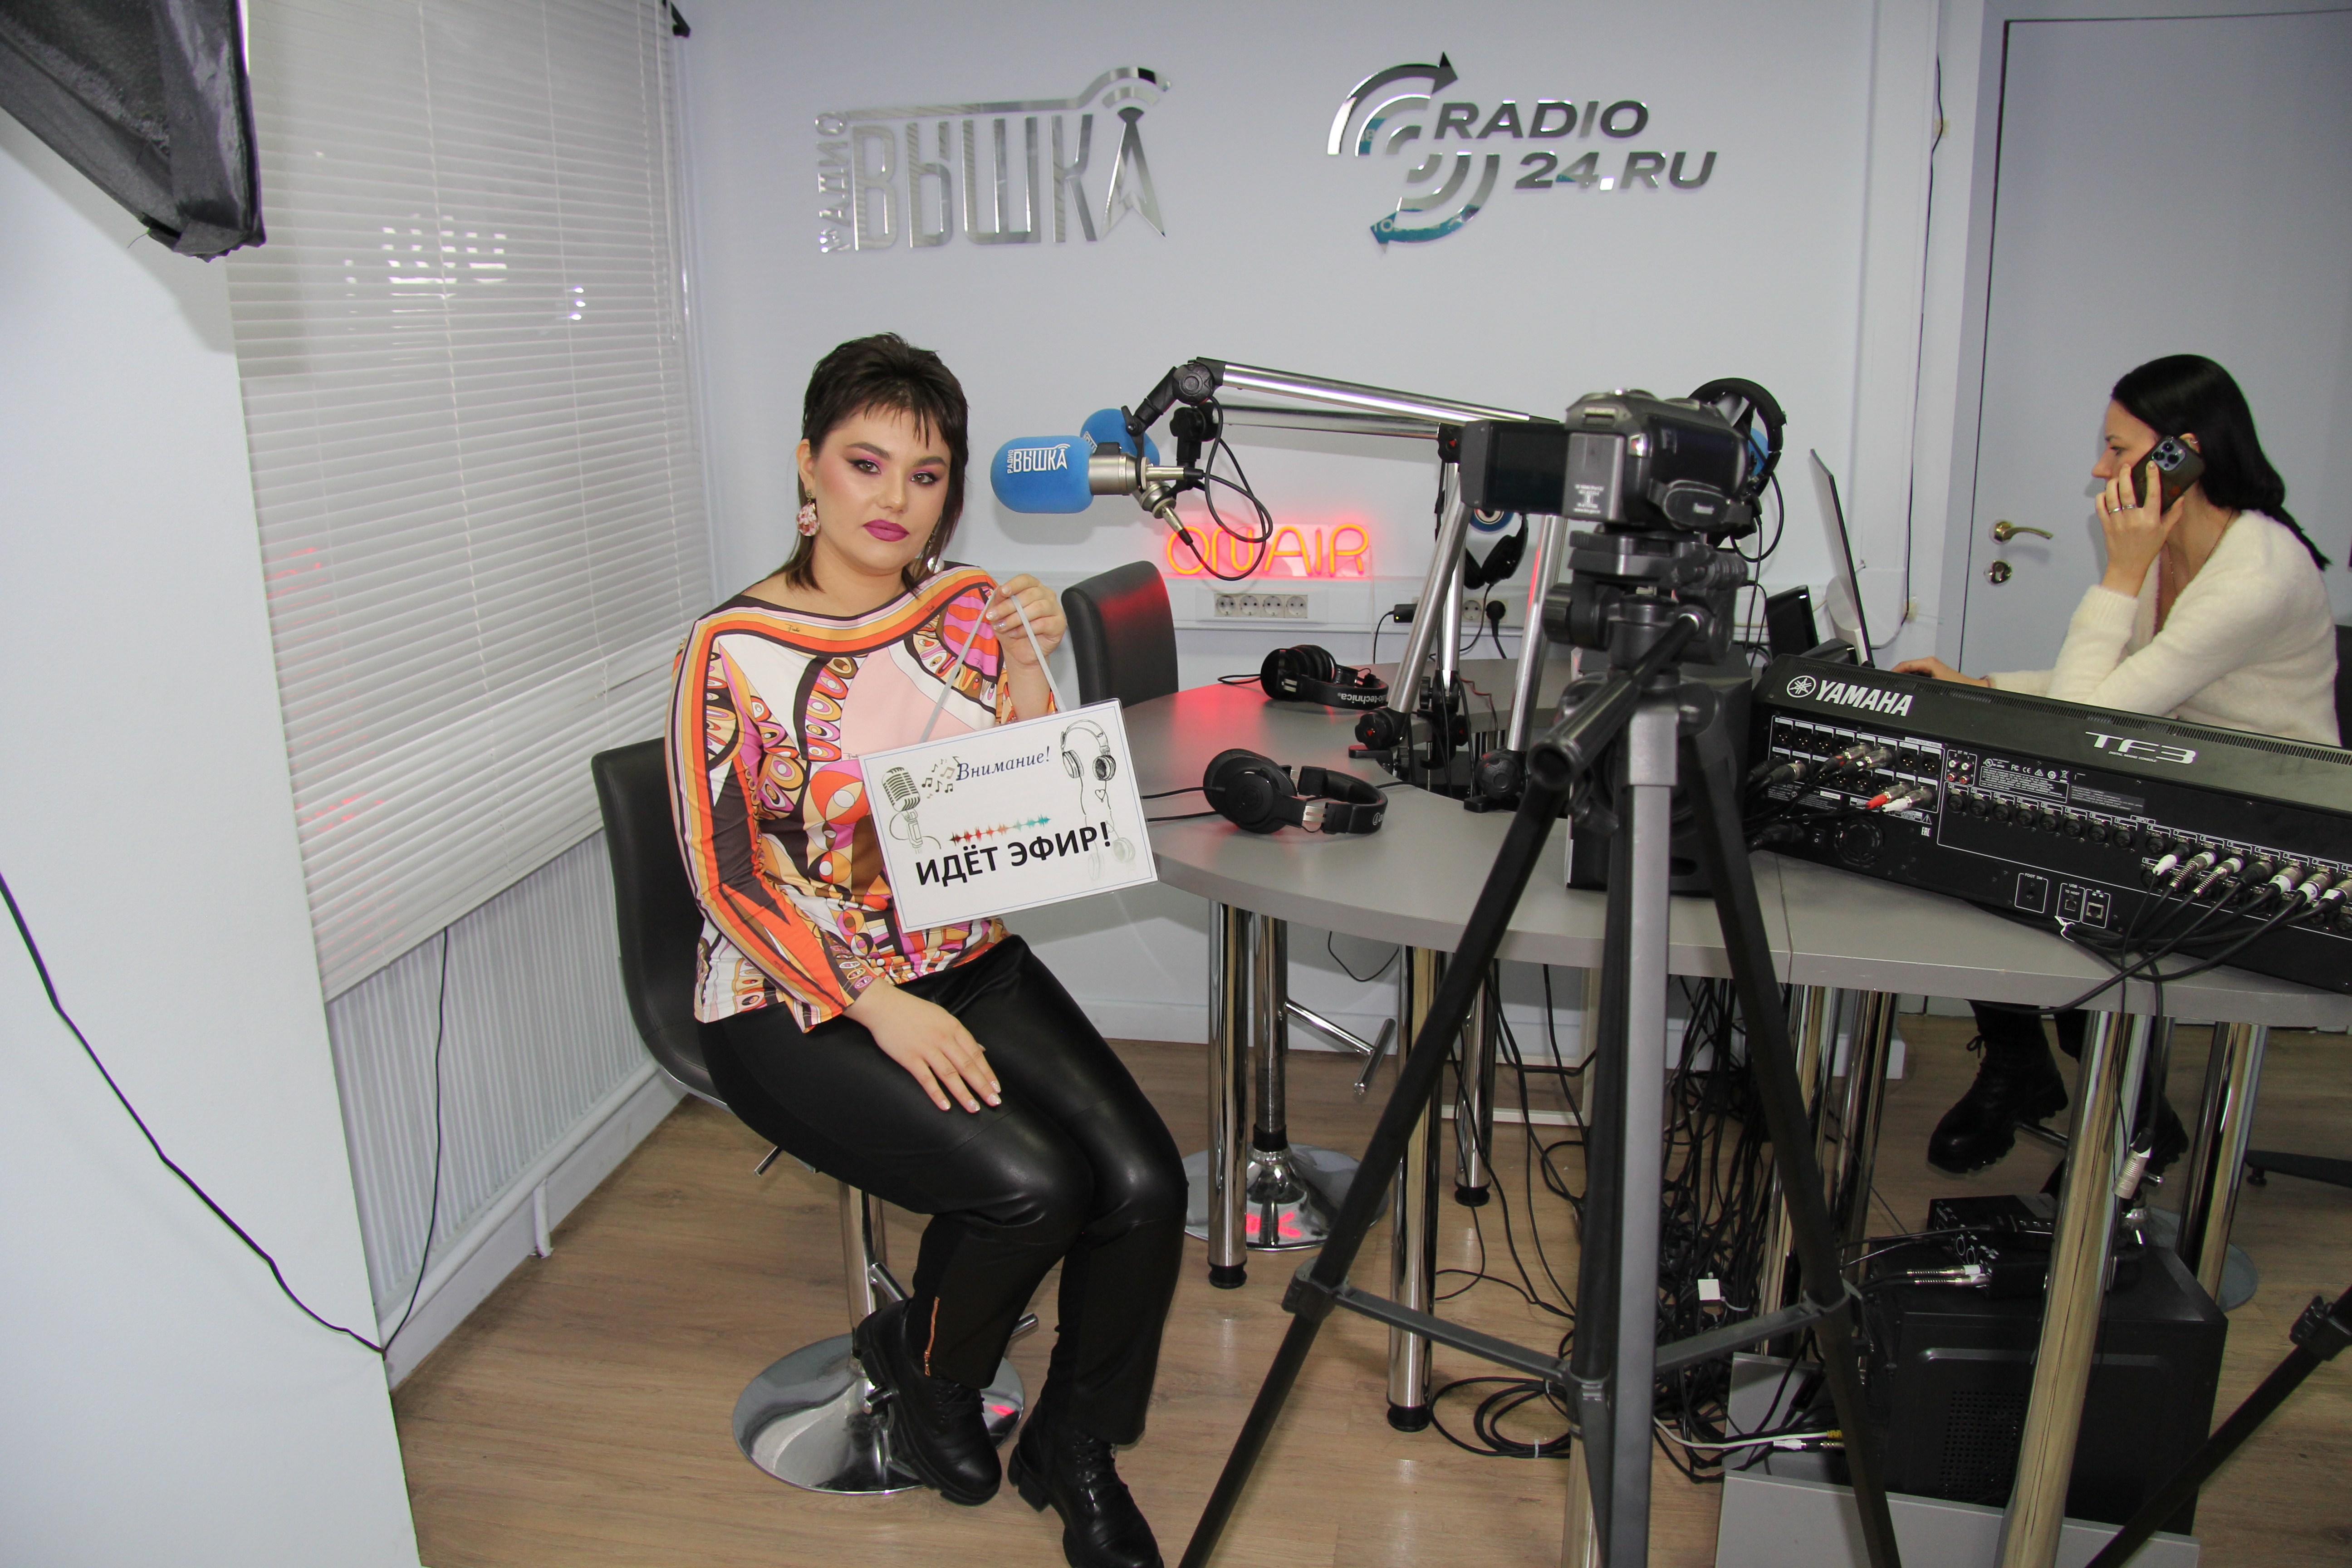 Карина Кьют - Интересные вопросы интервью на радио "Вышка"  #каринакьют #вышка #успех #поп